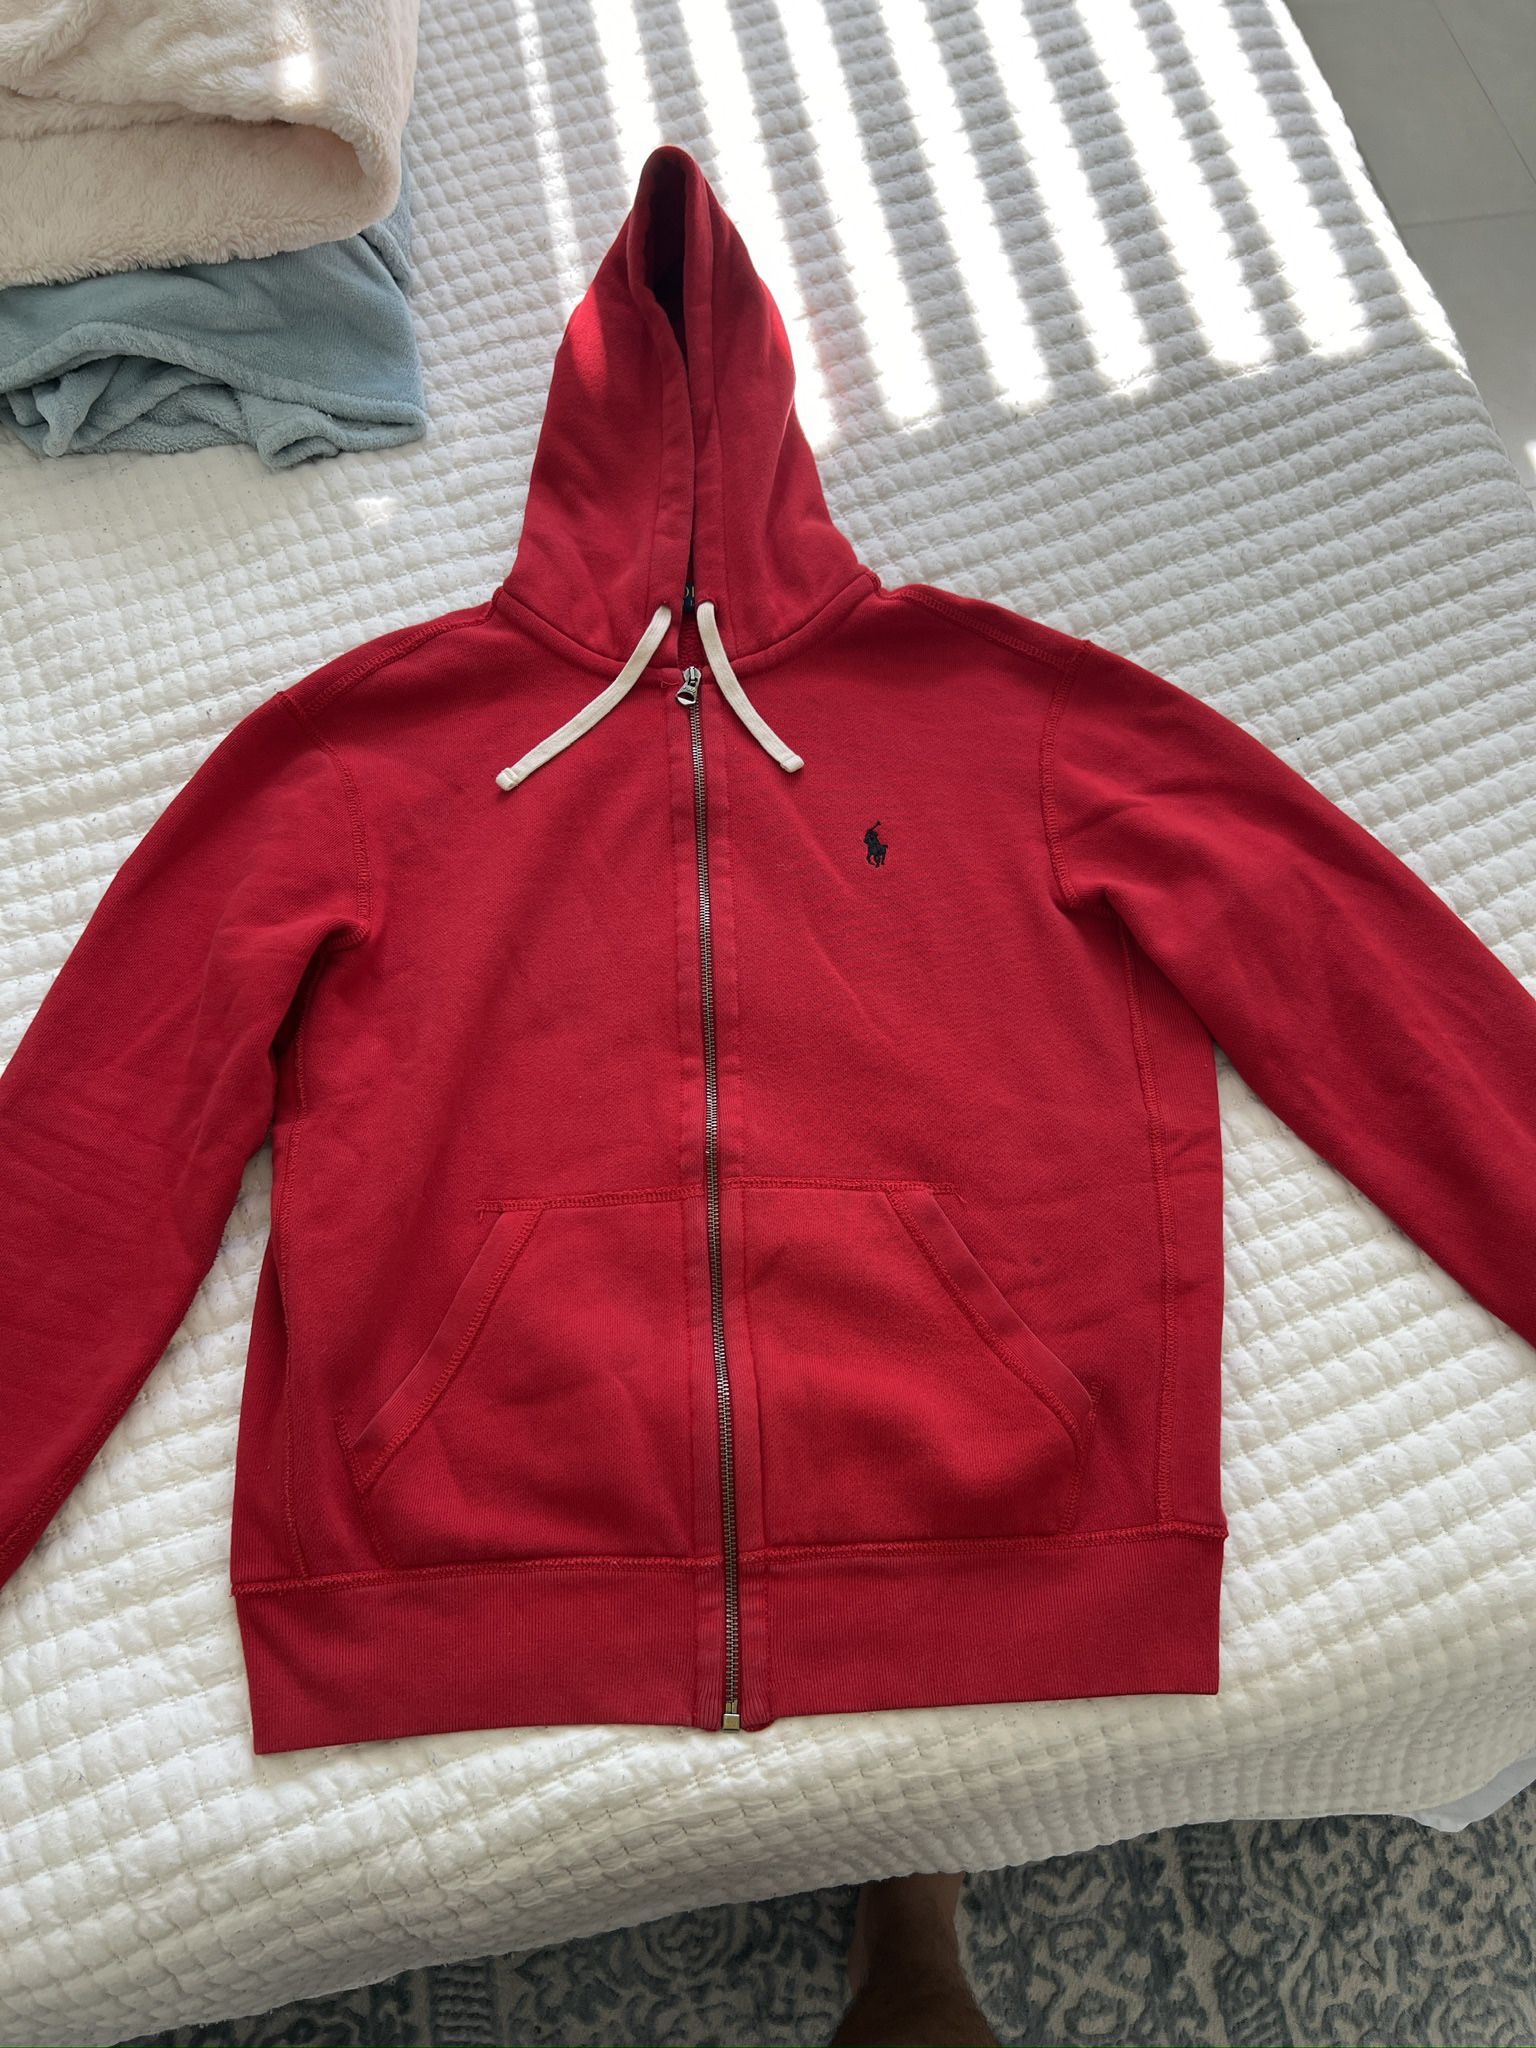 Polo Ralph Lauren red zipper hoodie size medium